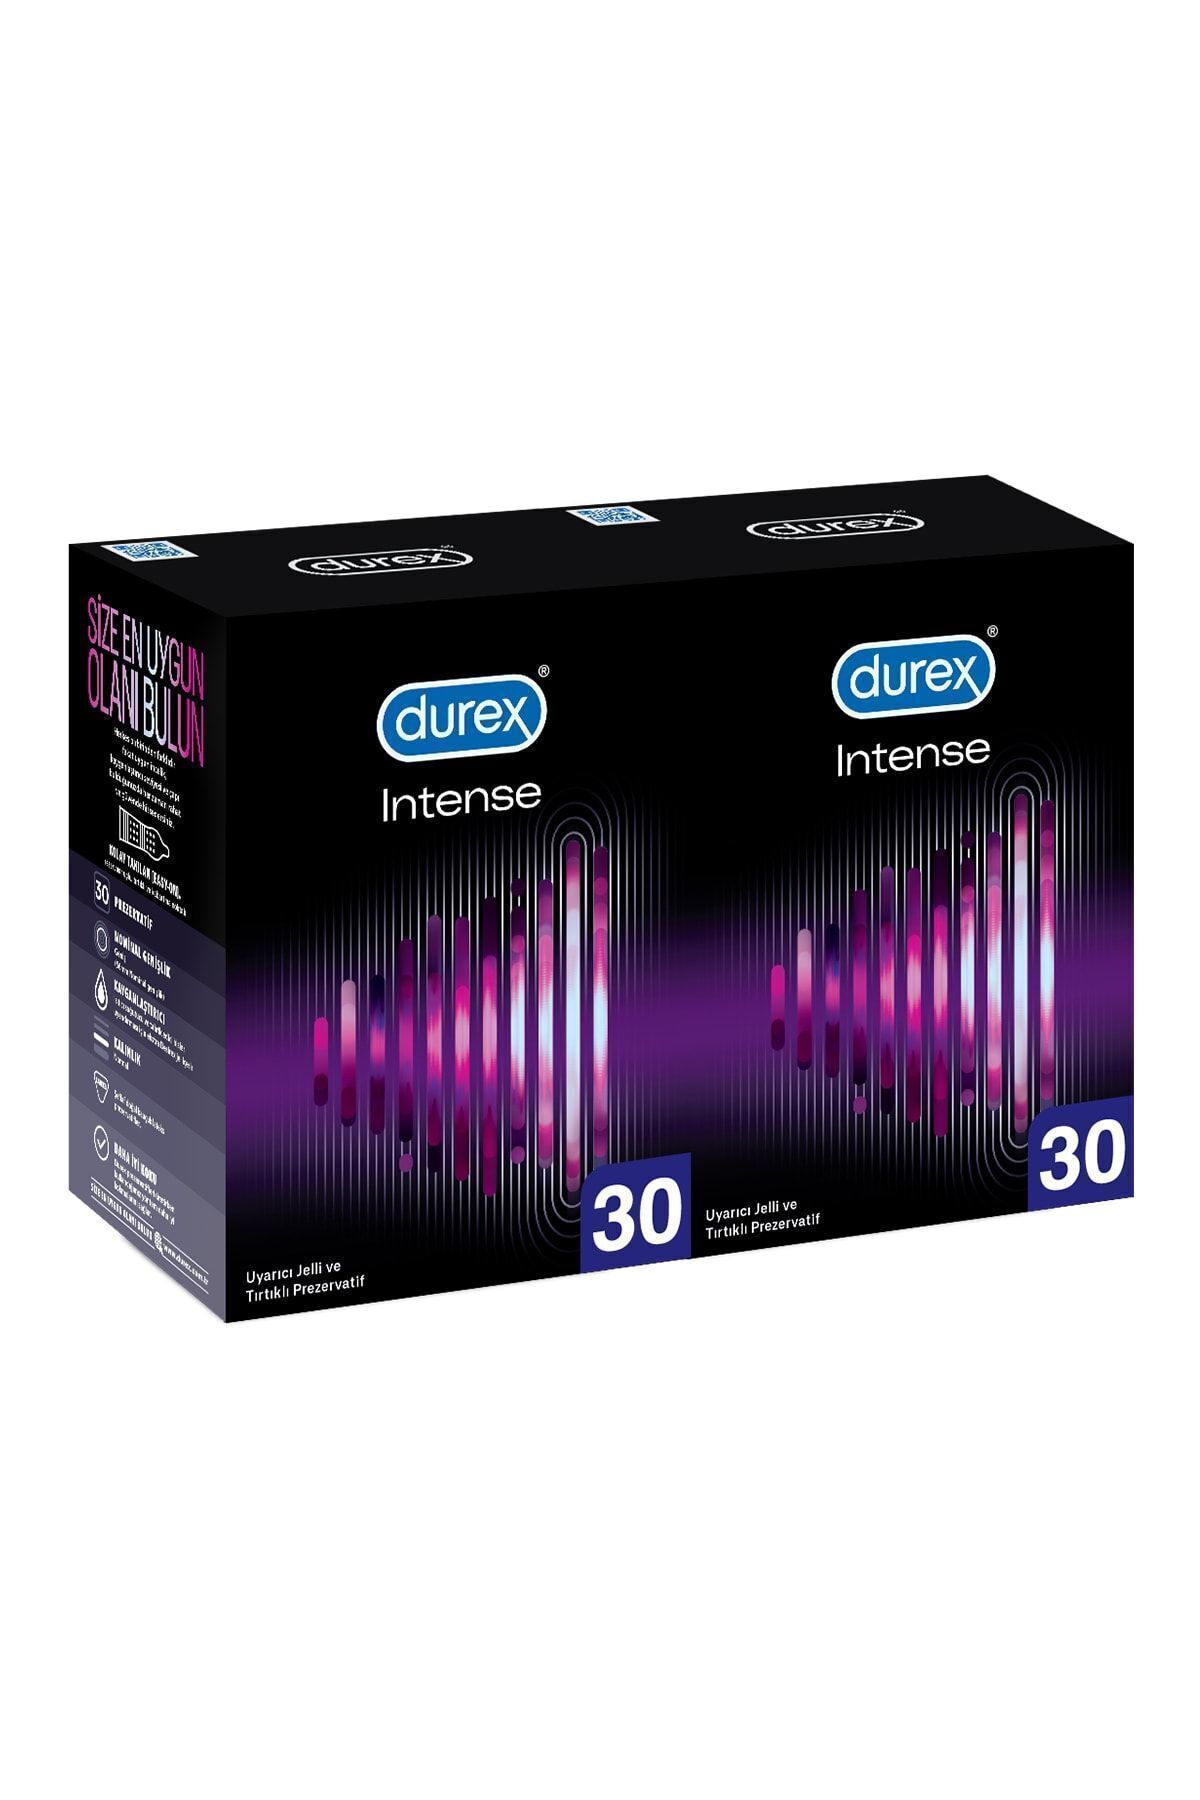 Durex Intense Uyarıcı Jelli ve Tırtıklı Prezervatif 30'lu X 2 Adet (60 Adet)